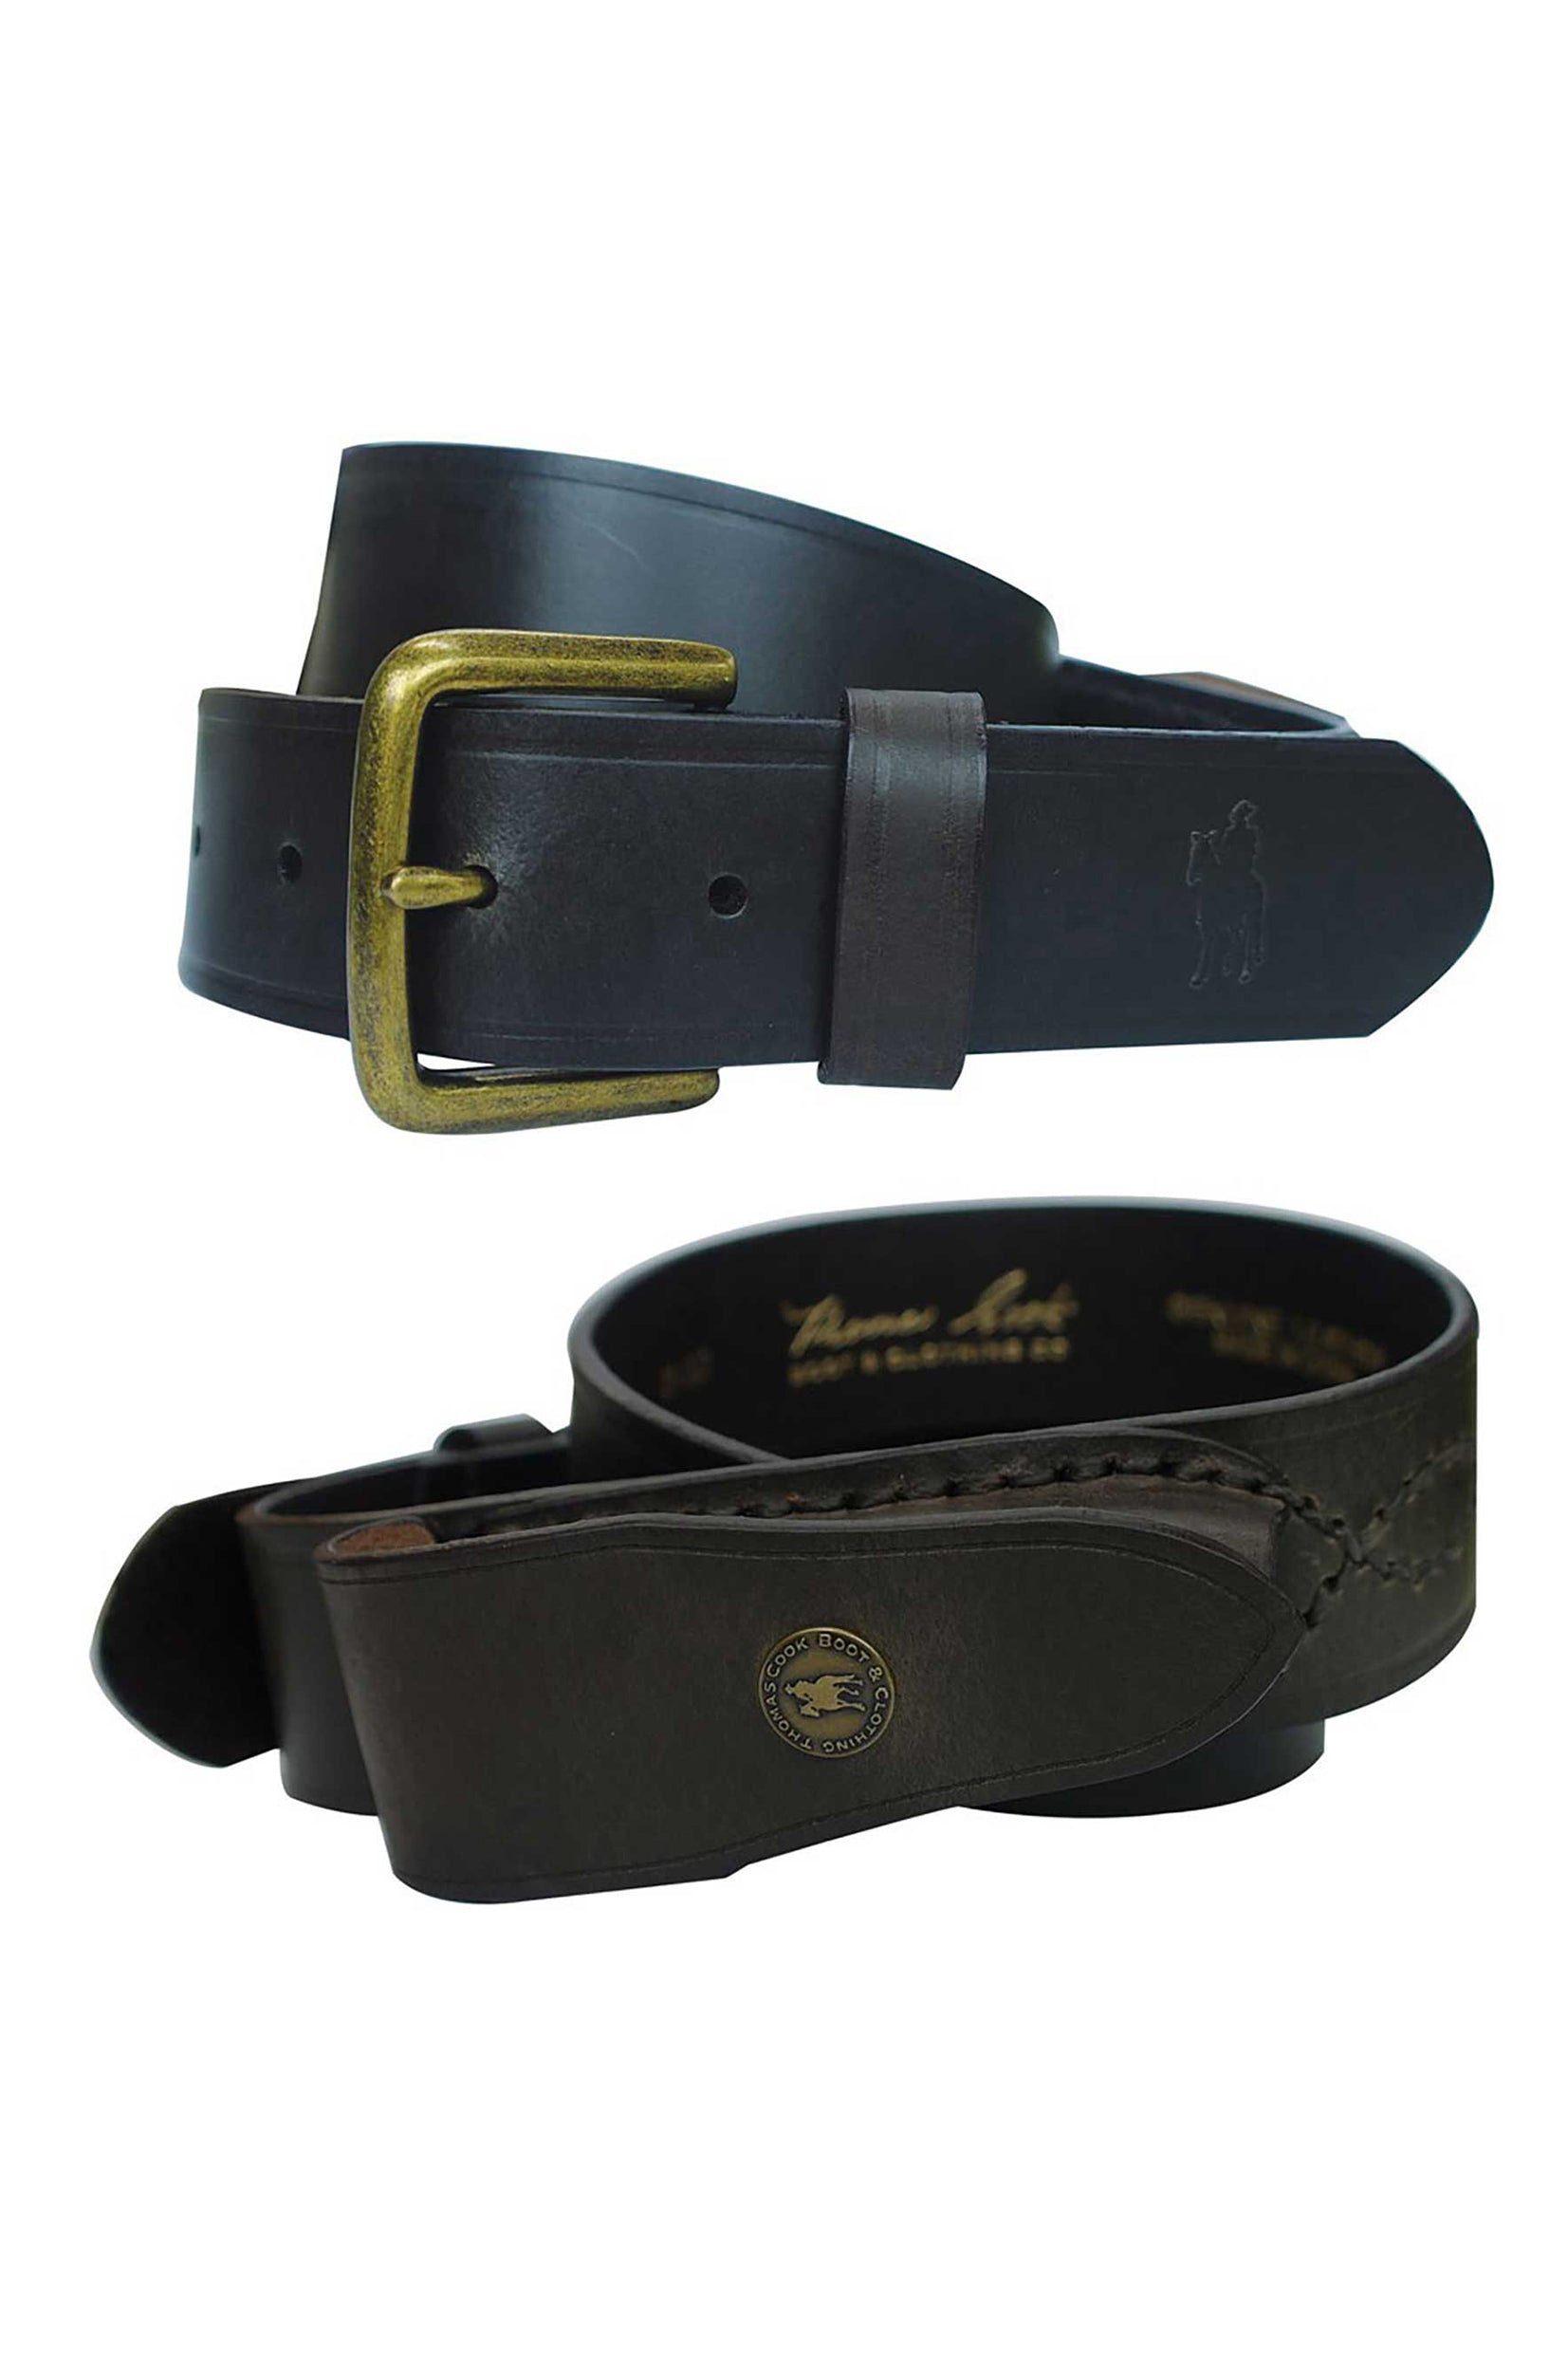 knife belt, pocket knife, leather belt, grenfell shops